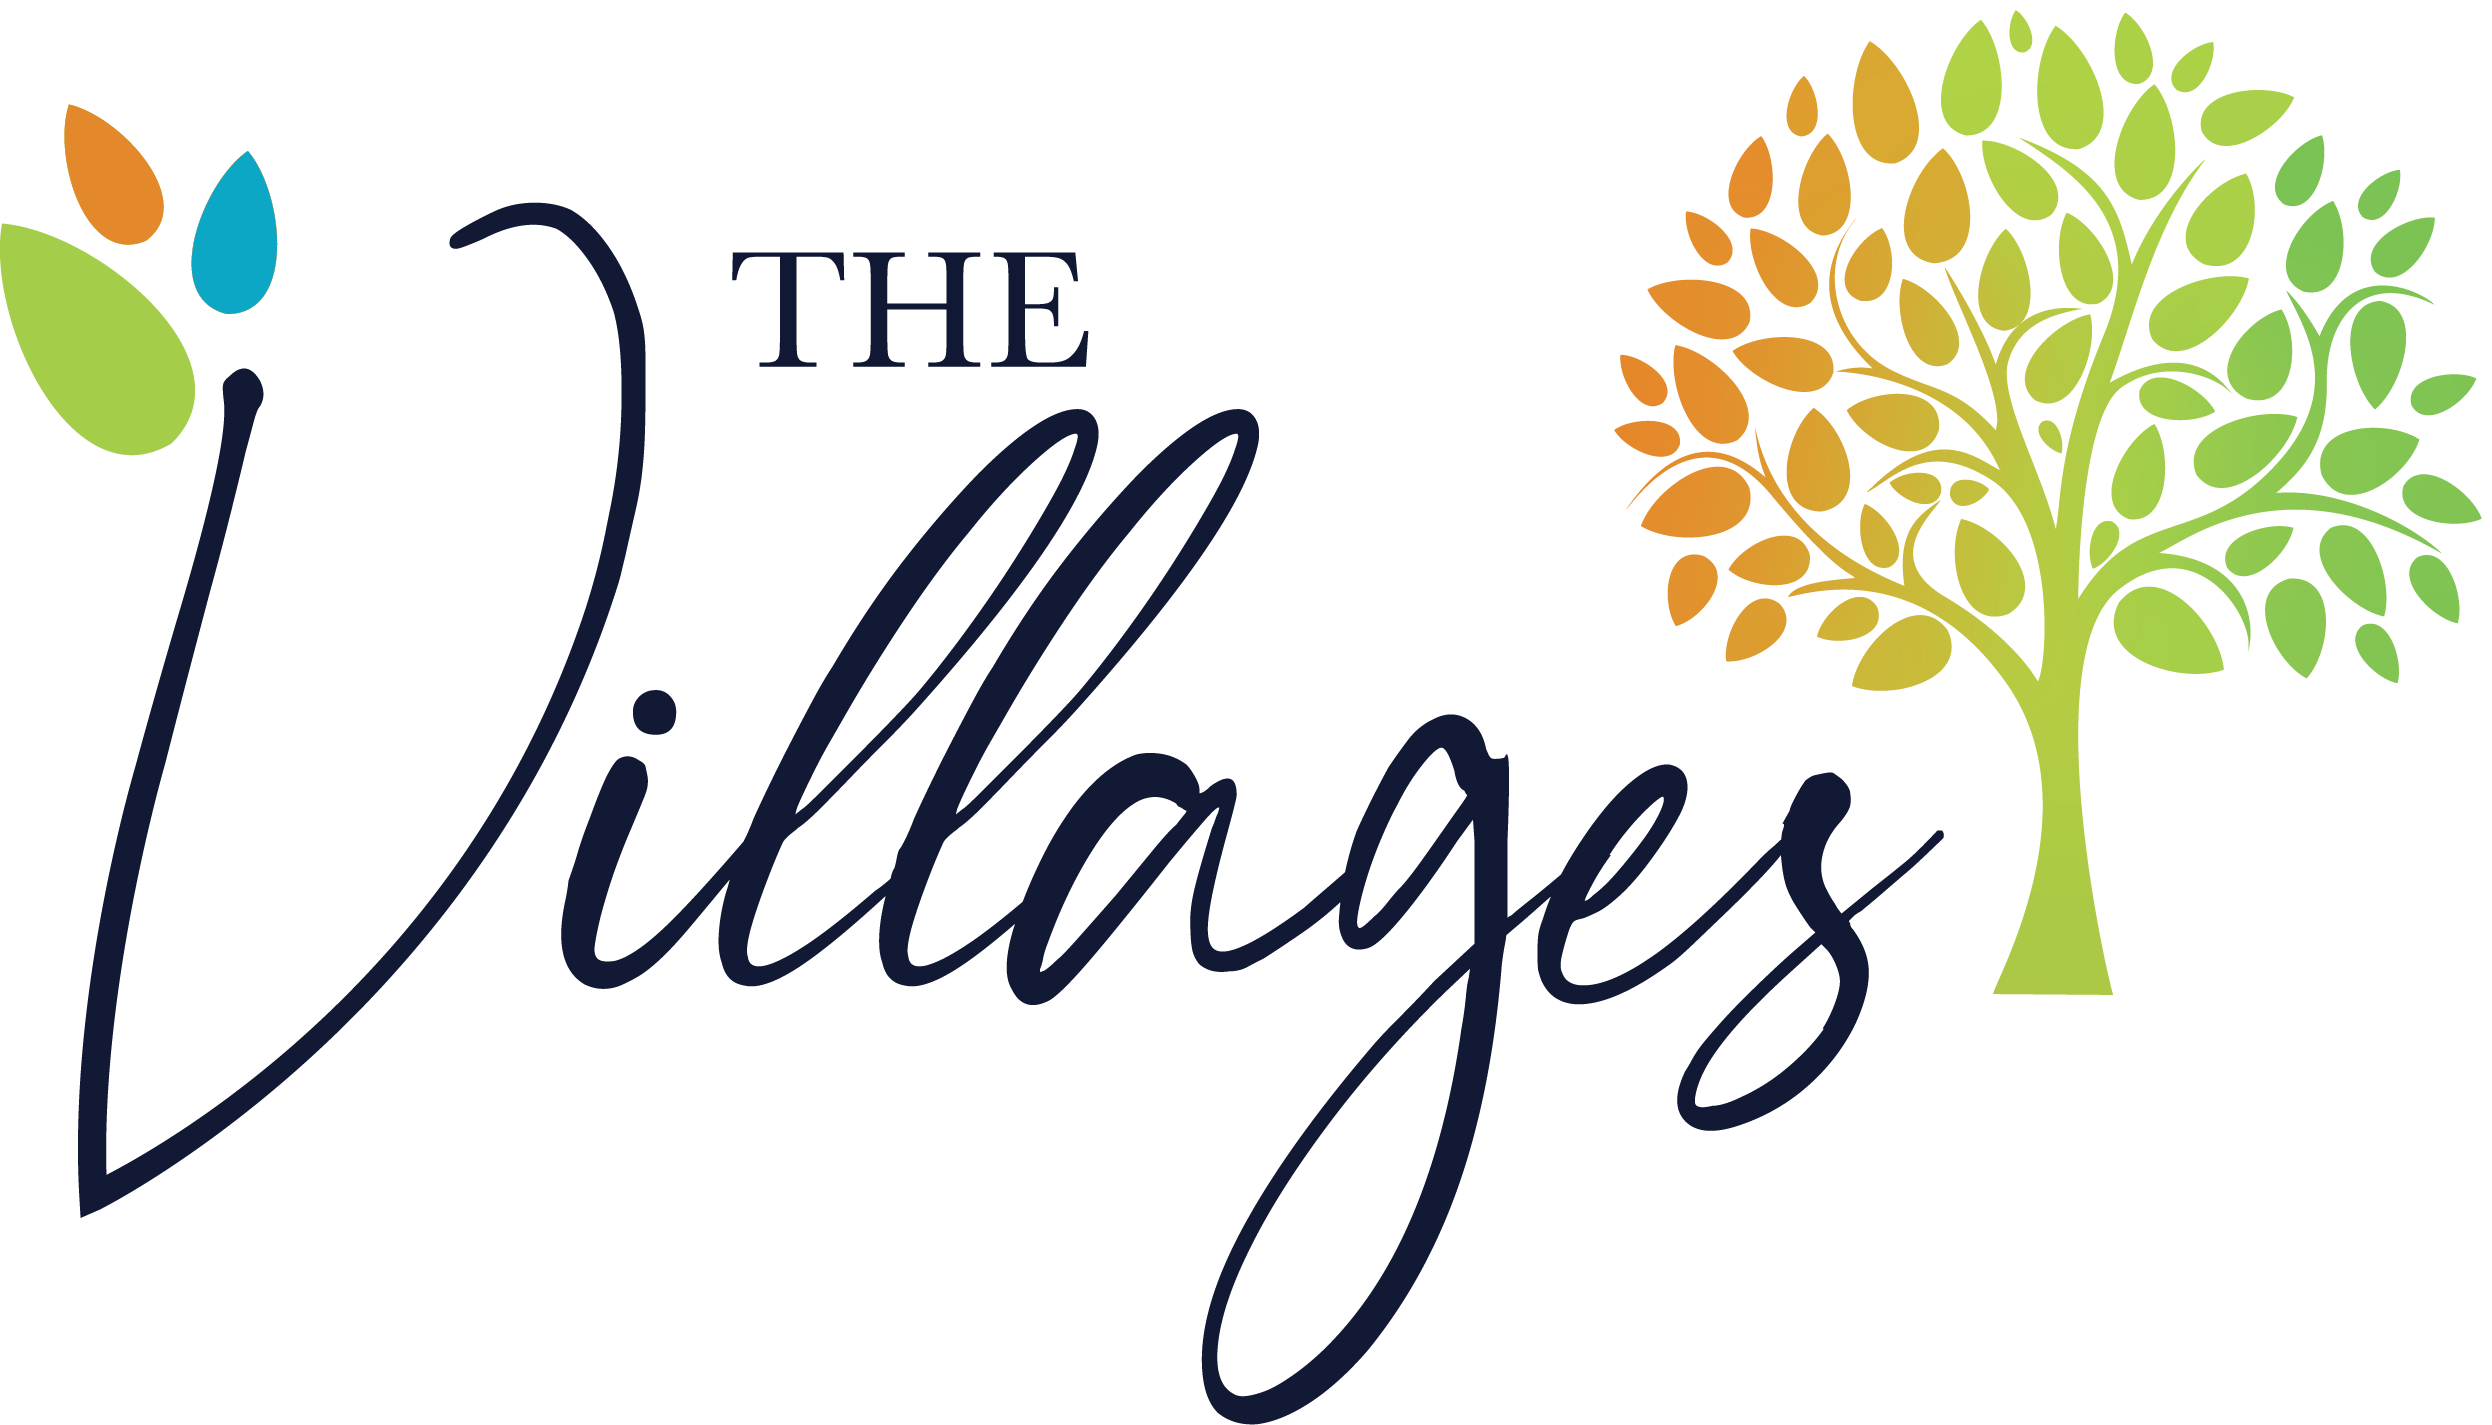 The Villages